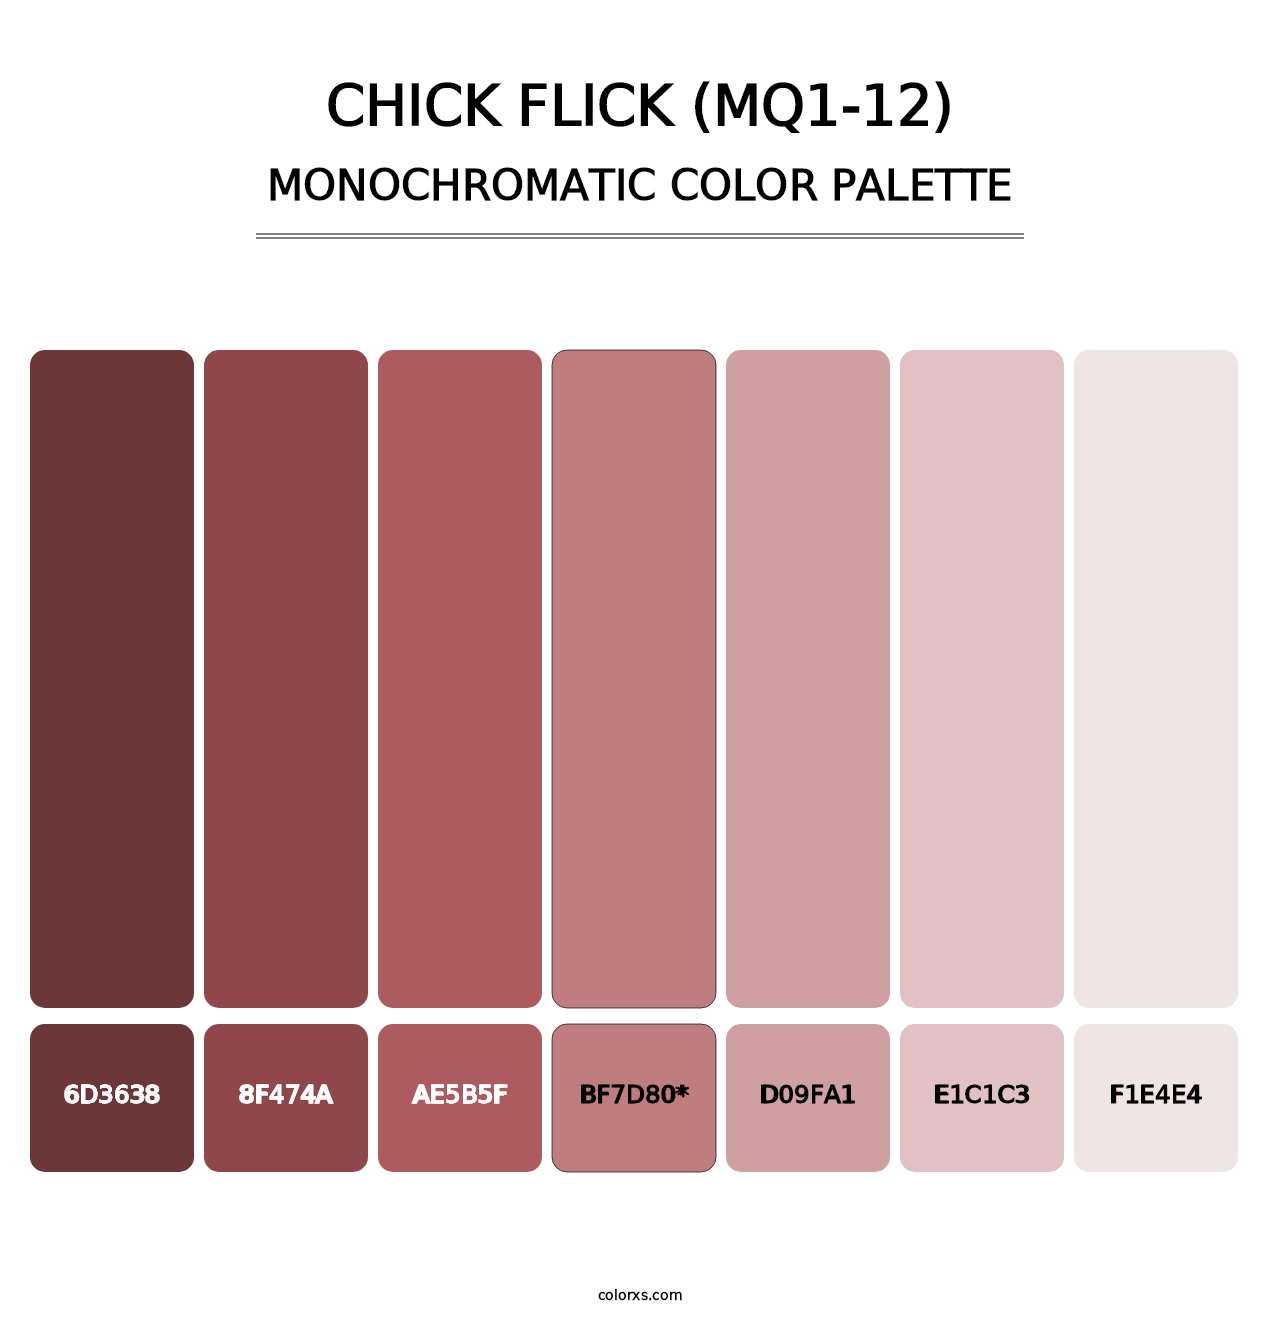 Chick Flick (MQ1-12) - Monochromatic Color Palette